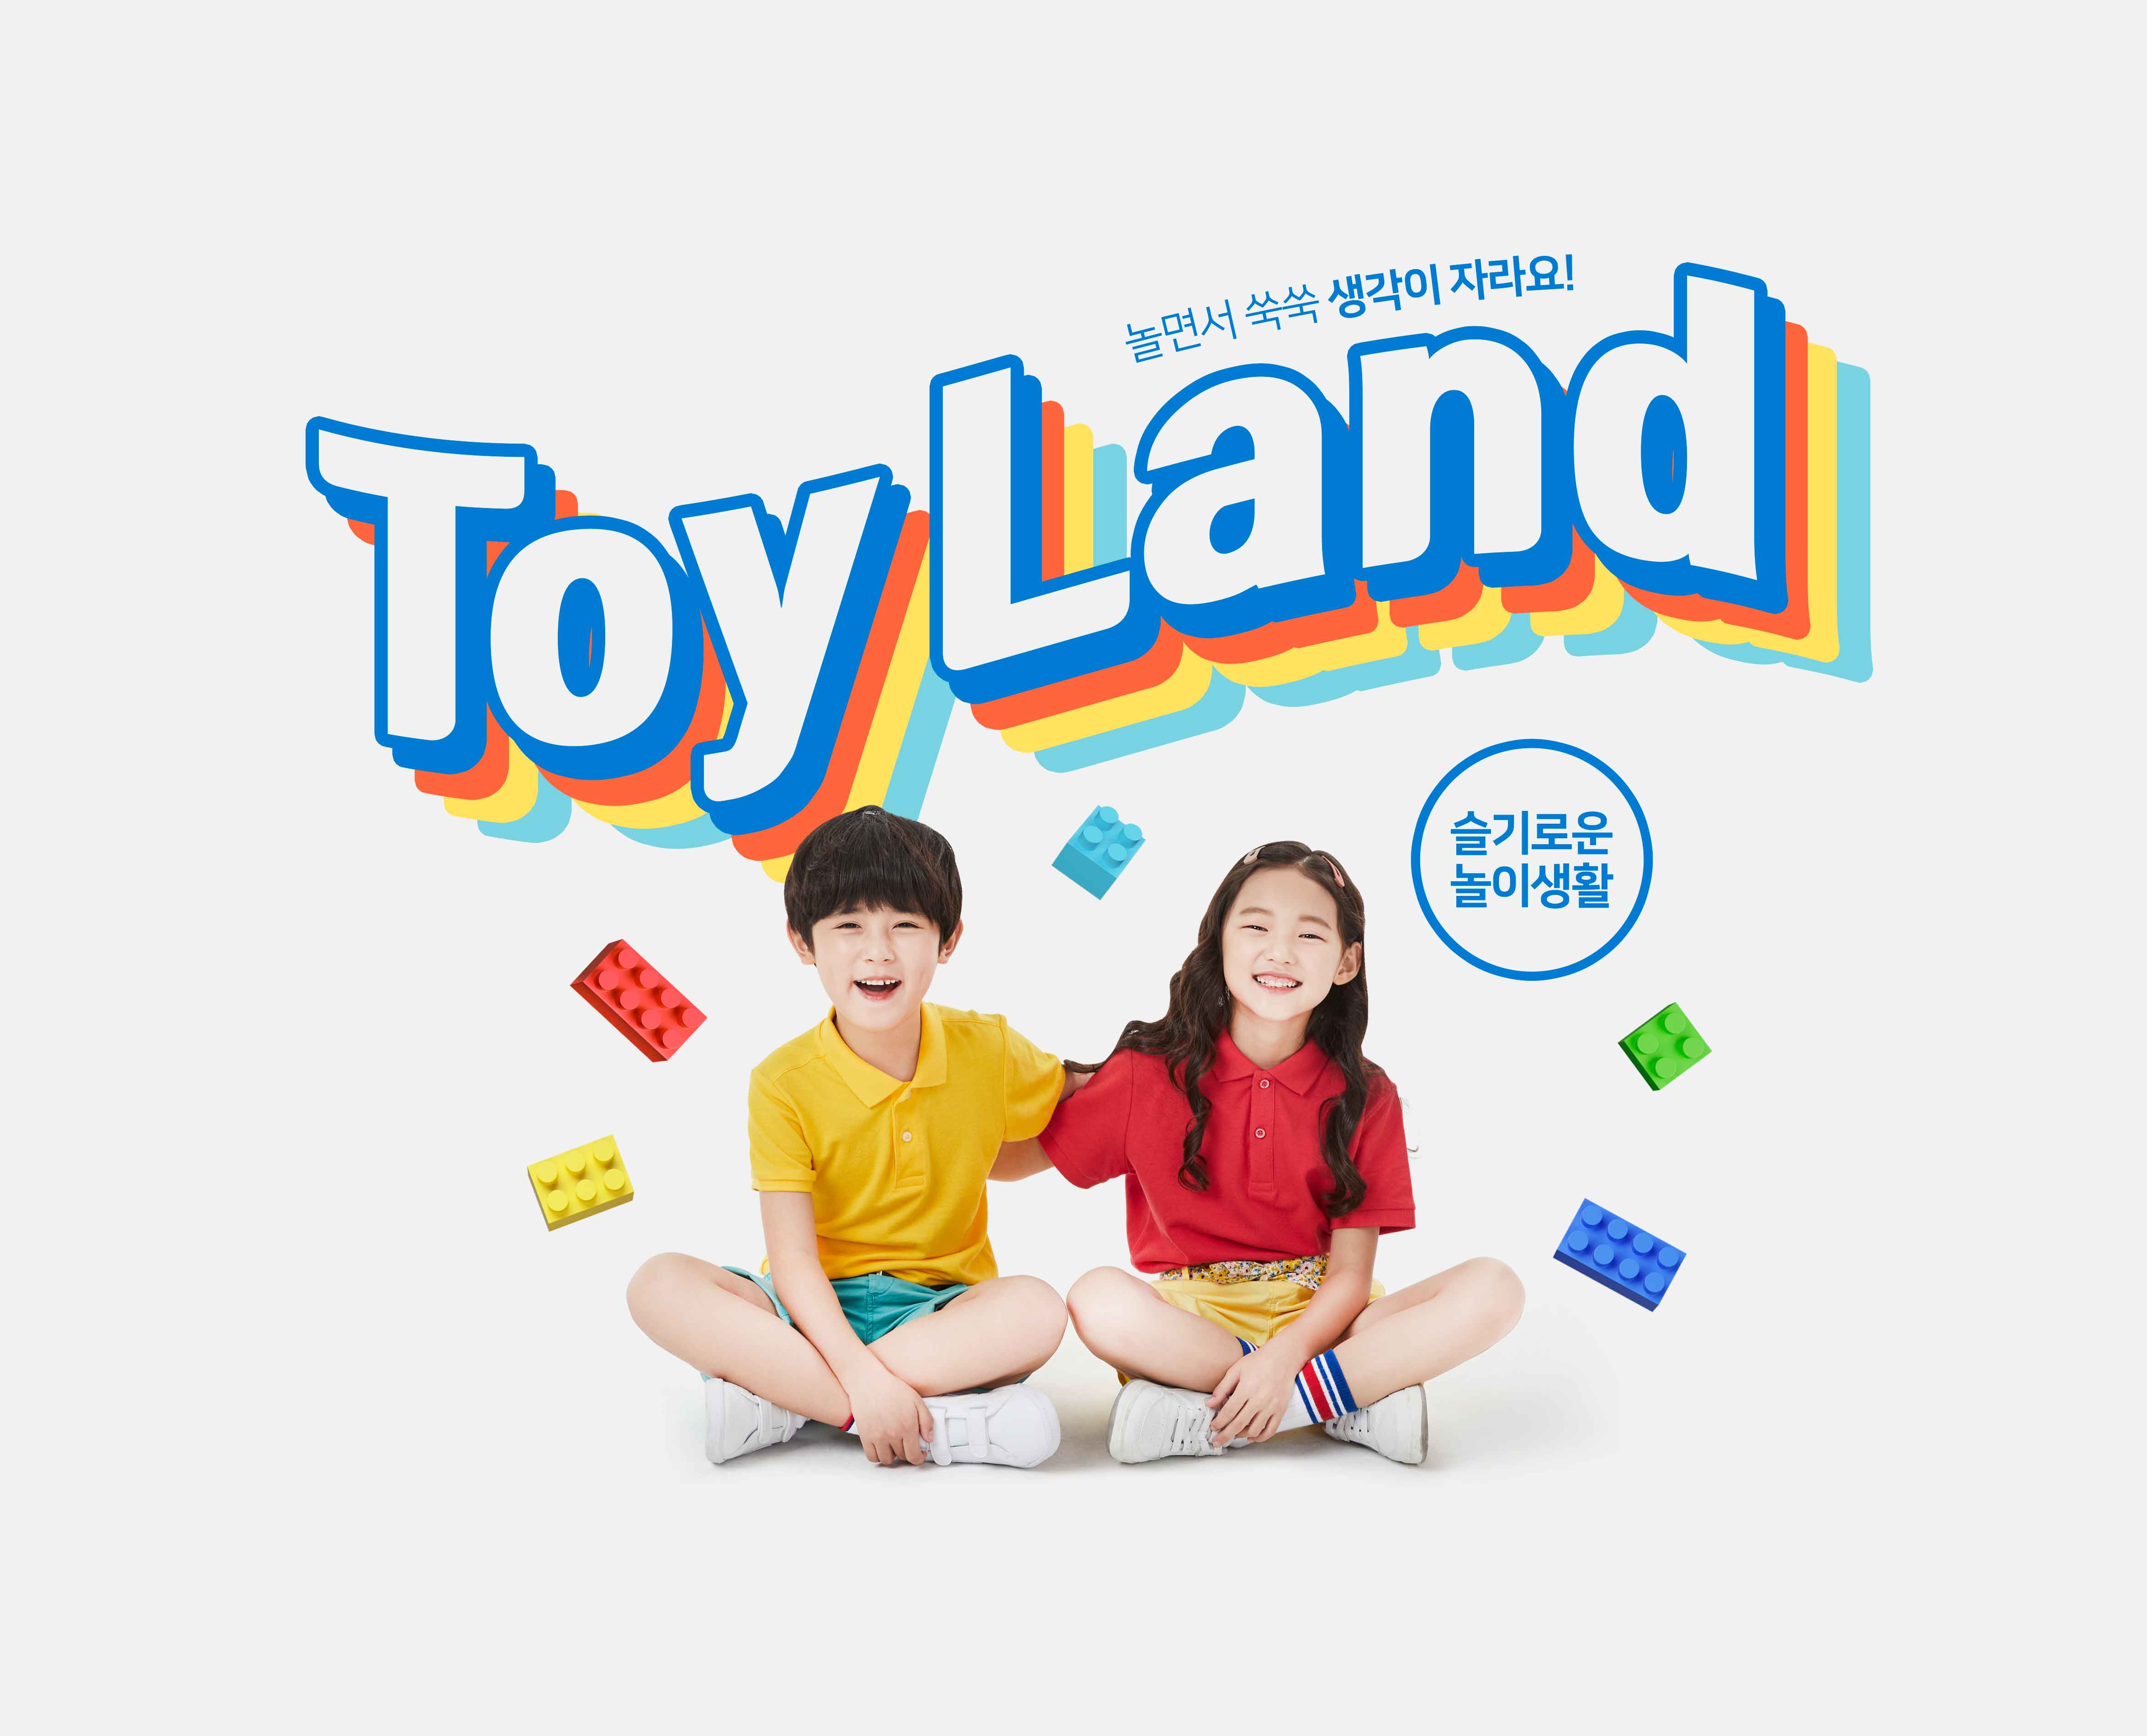 益智积木玩具游戏儿童成长主题海报PSD素材第一素材精选韩国素材插图